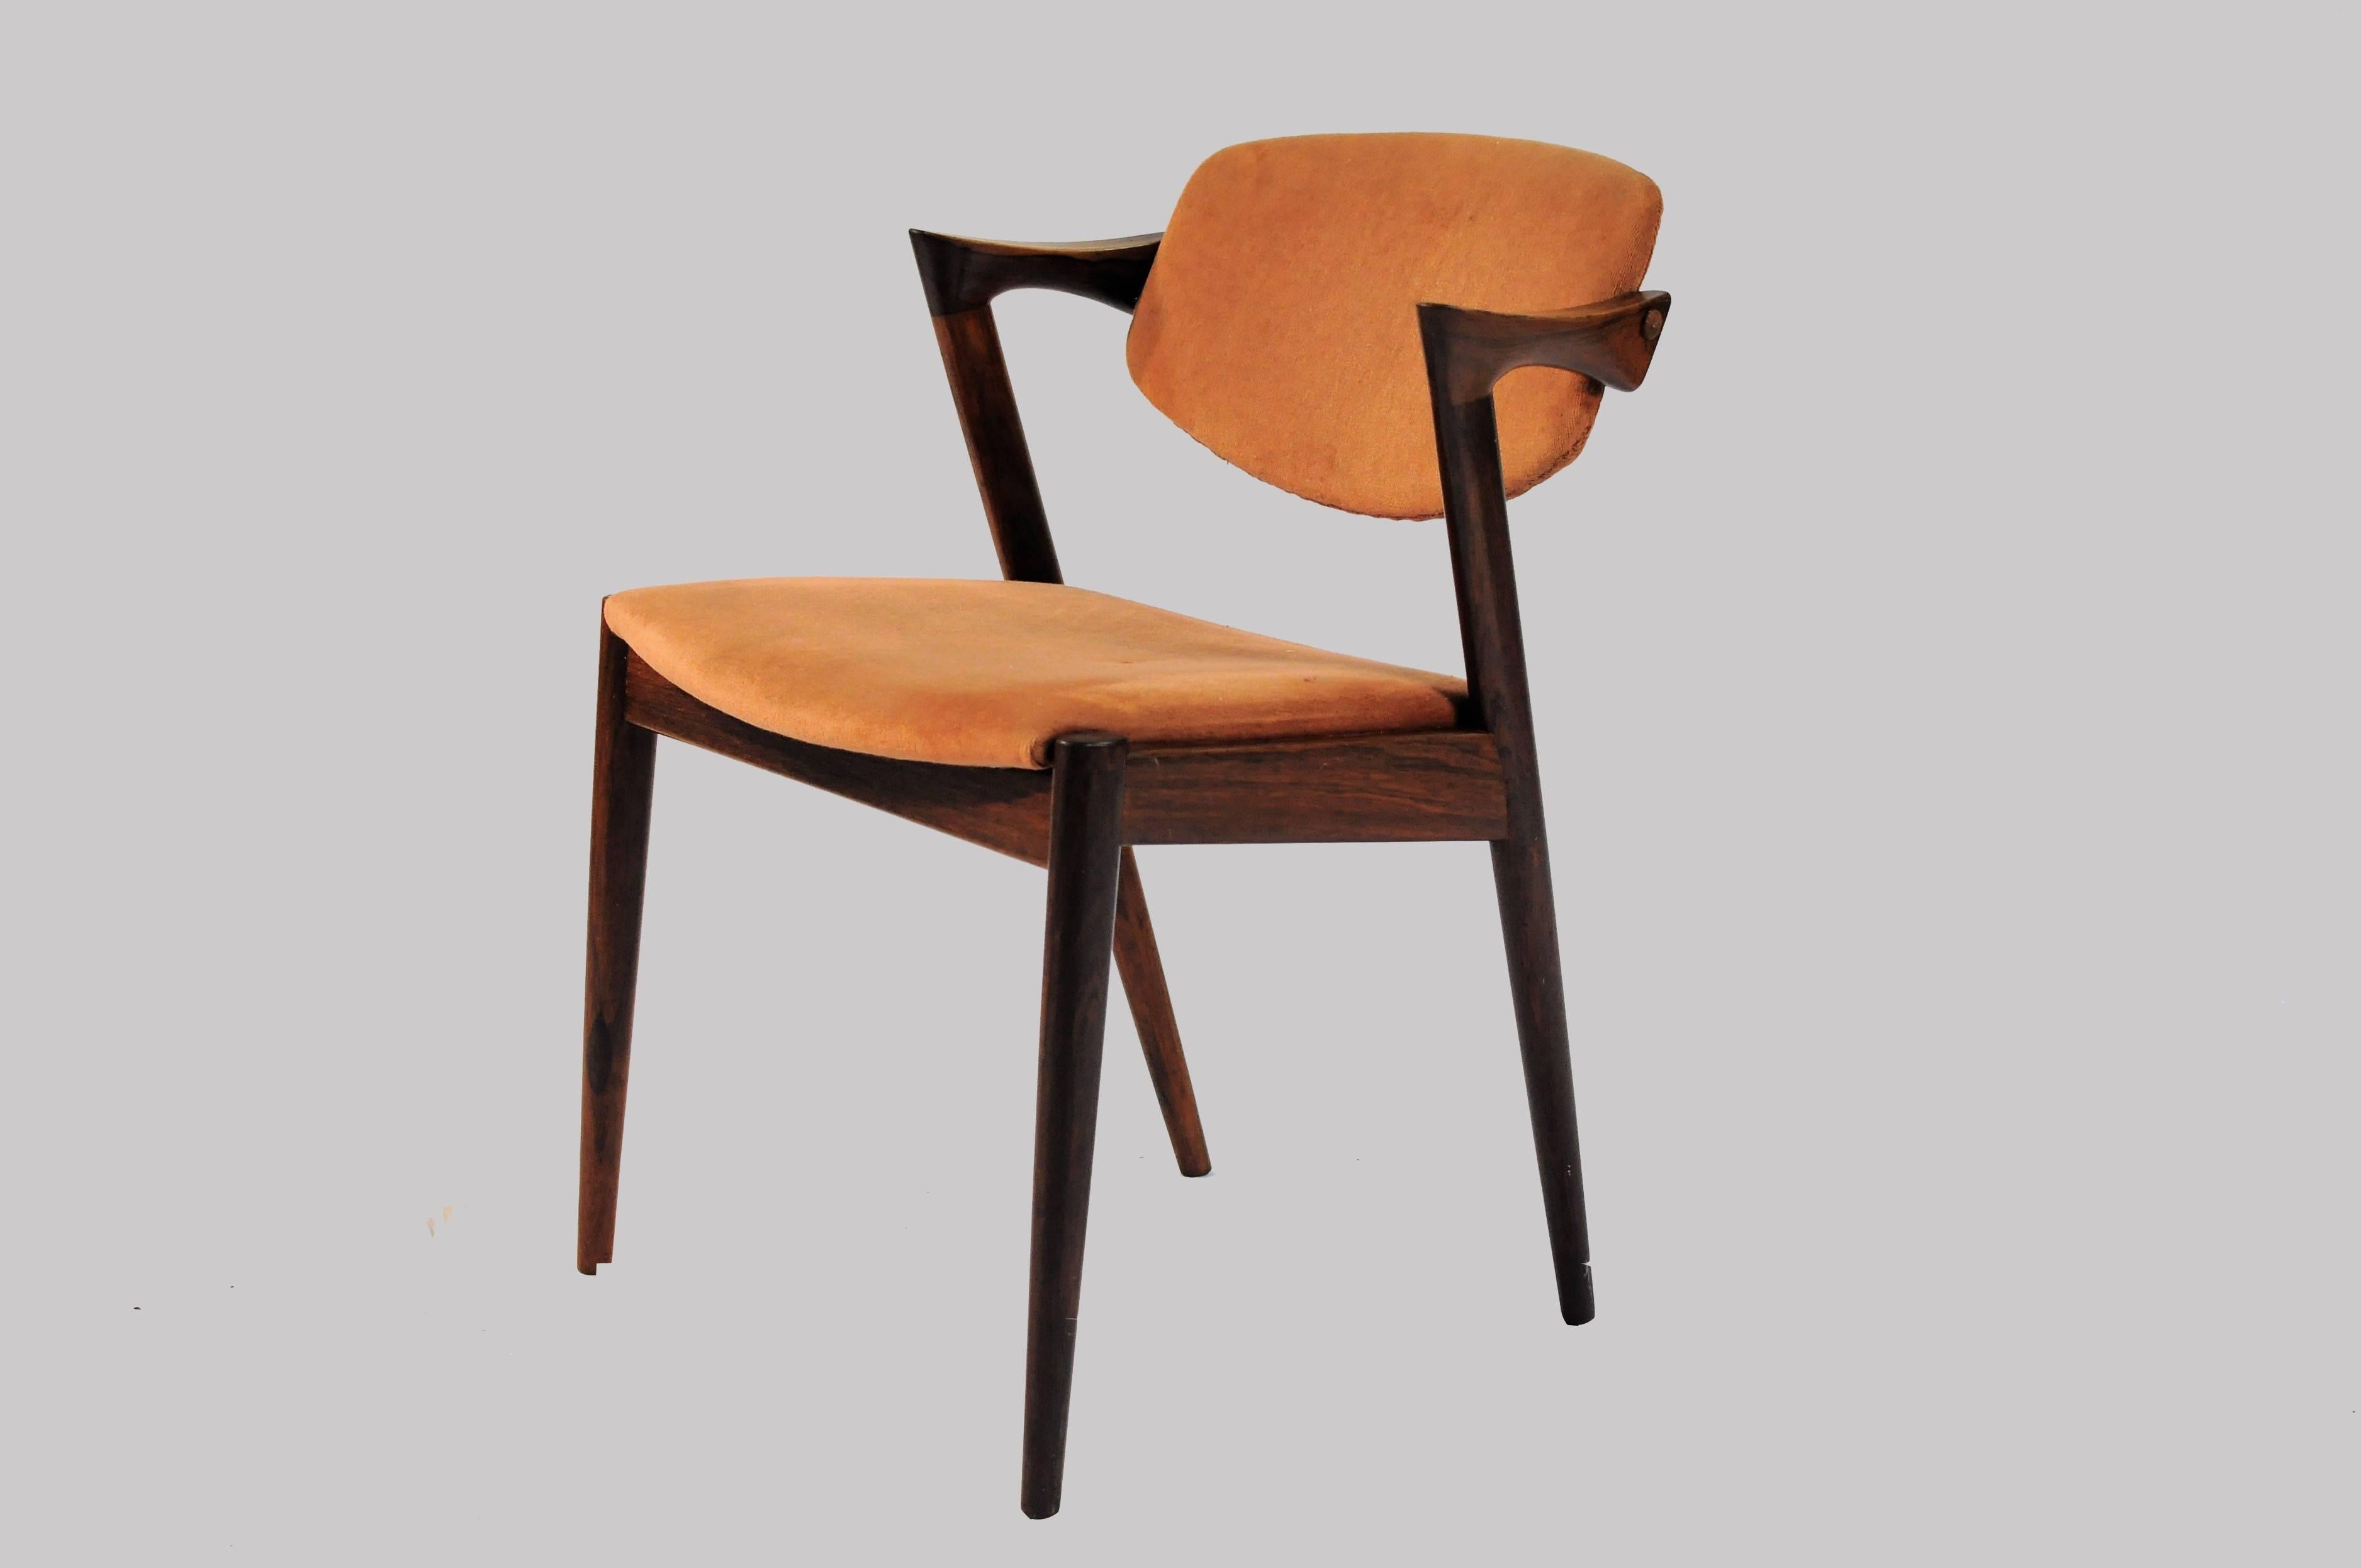 Ensemble de douze chaises de salle à manger en bois de rose des années 1960, entièrement restaurées, par Kai Kristiansen pour Schous Møbelfabrik.

Les chaises ont le design léger et élégant typique de Kai Kristiansens, qui leur permet de s'intégrer